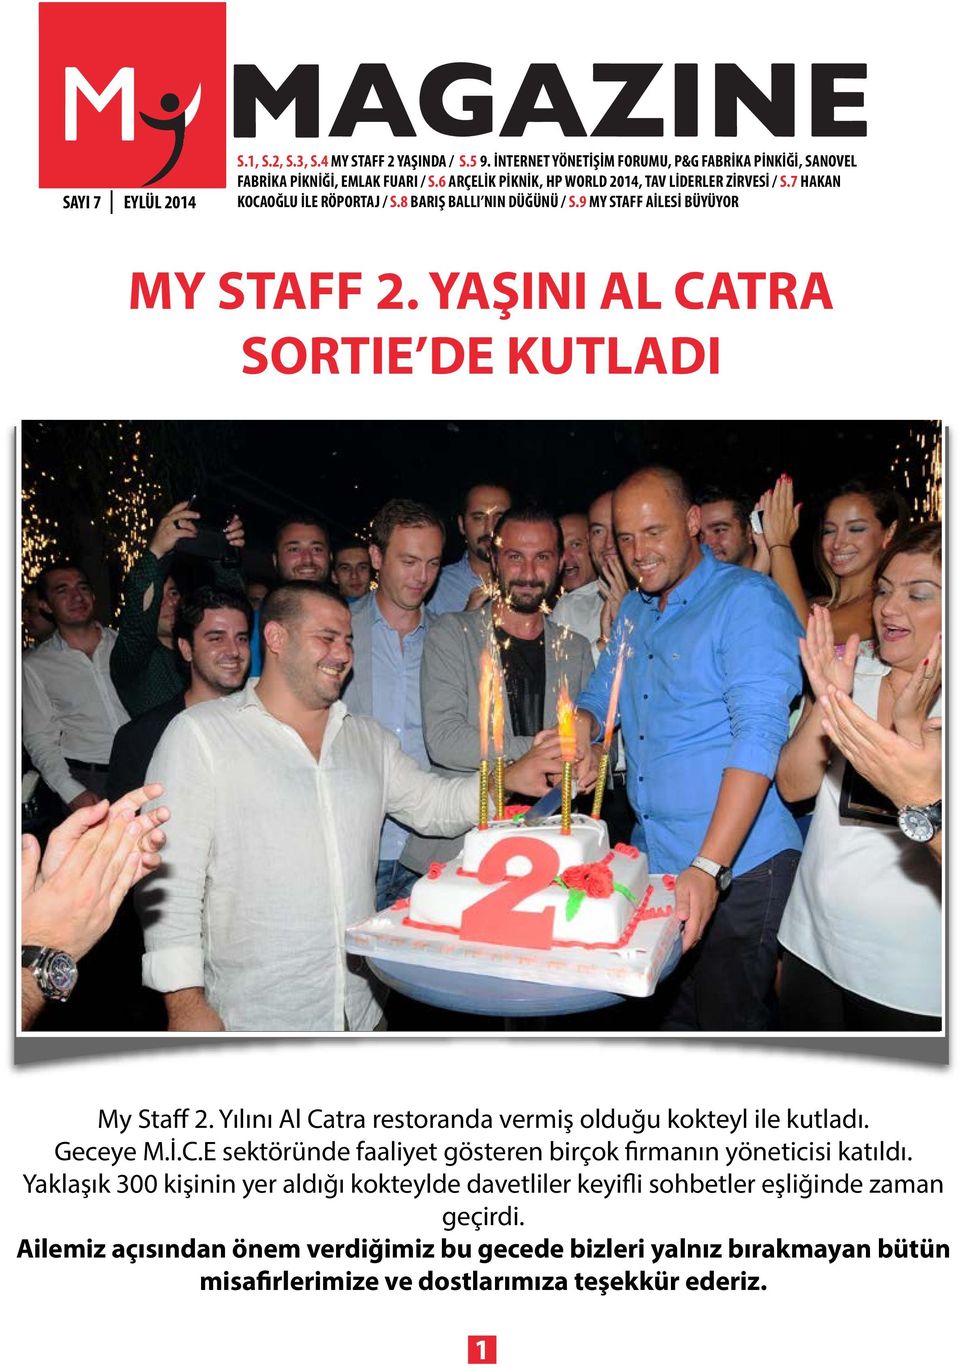 YAŞINI AL CATRA SORTIE DE KUTLADI My Staff 2. Yılını Al Catra restoranda vermiş olduğu kokteyl ile kutladı. Geceye M.İ.C.E sektöründe faaliyet gösteren birçok firmanın yöneticisi katıldı.